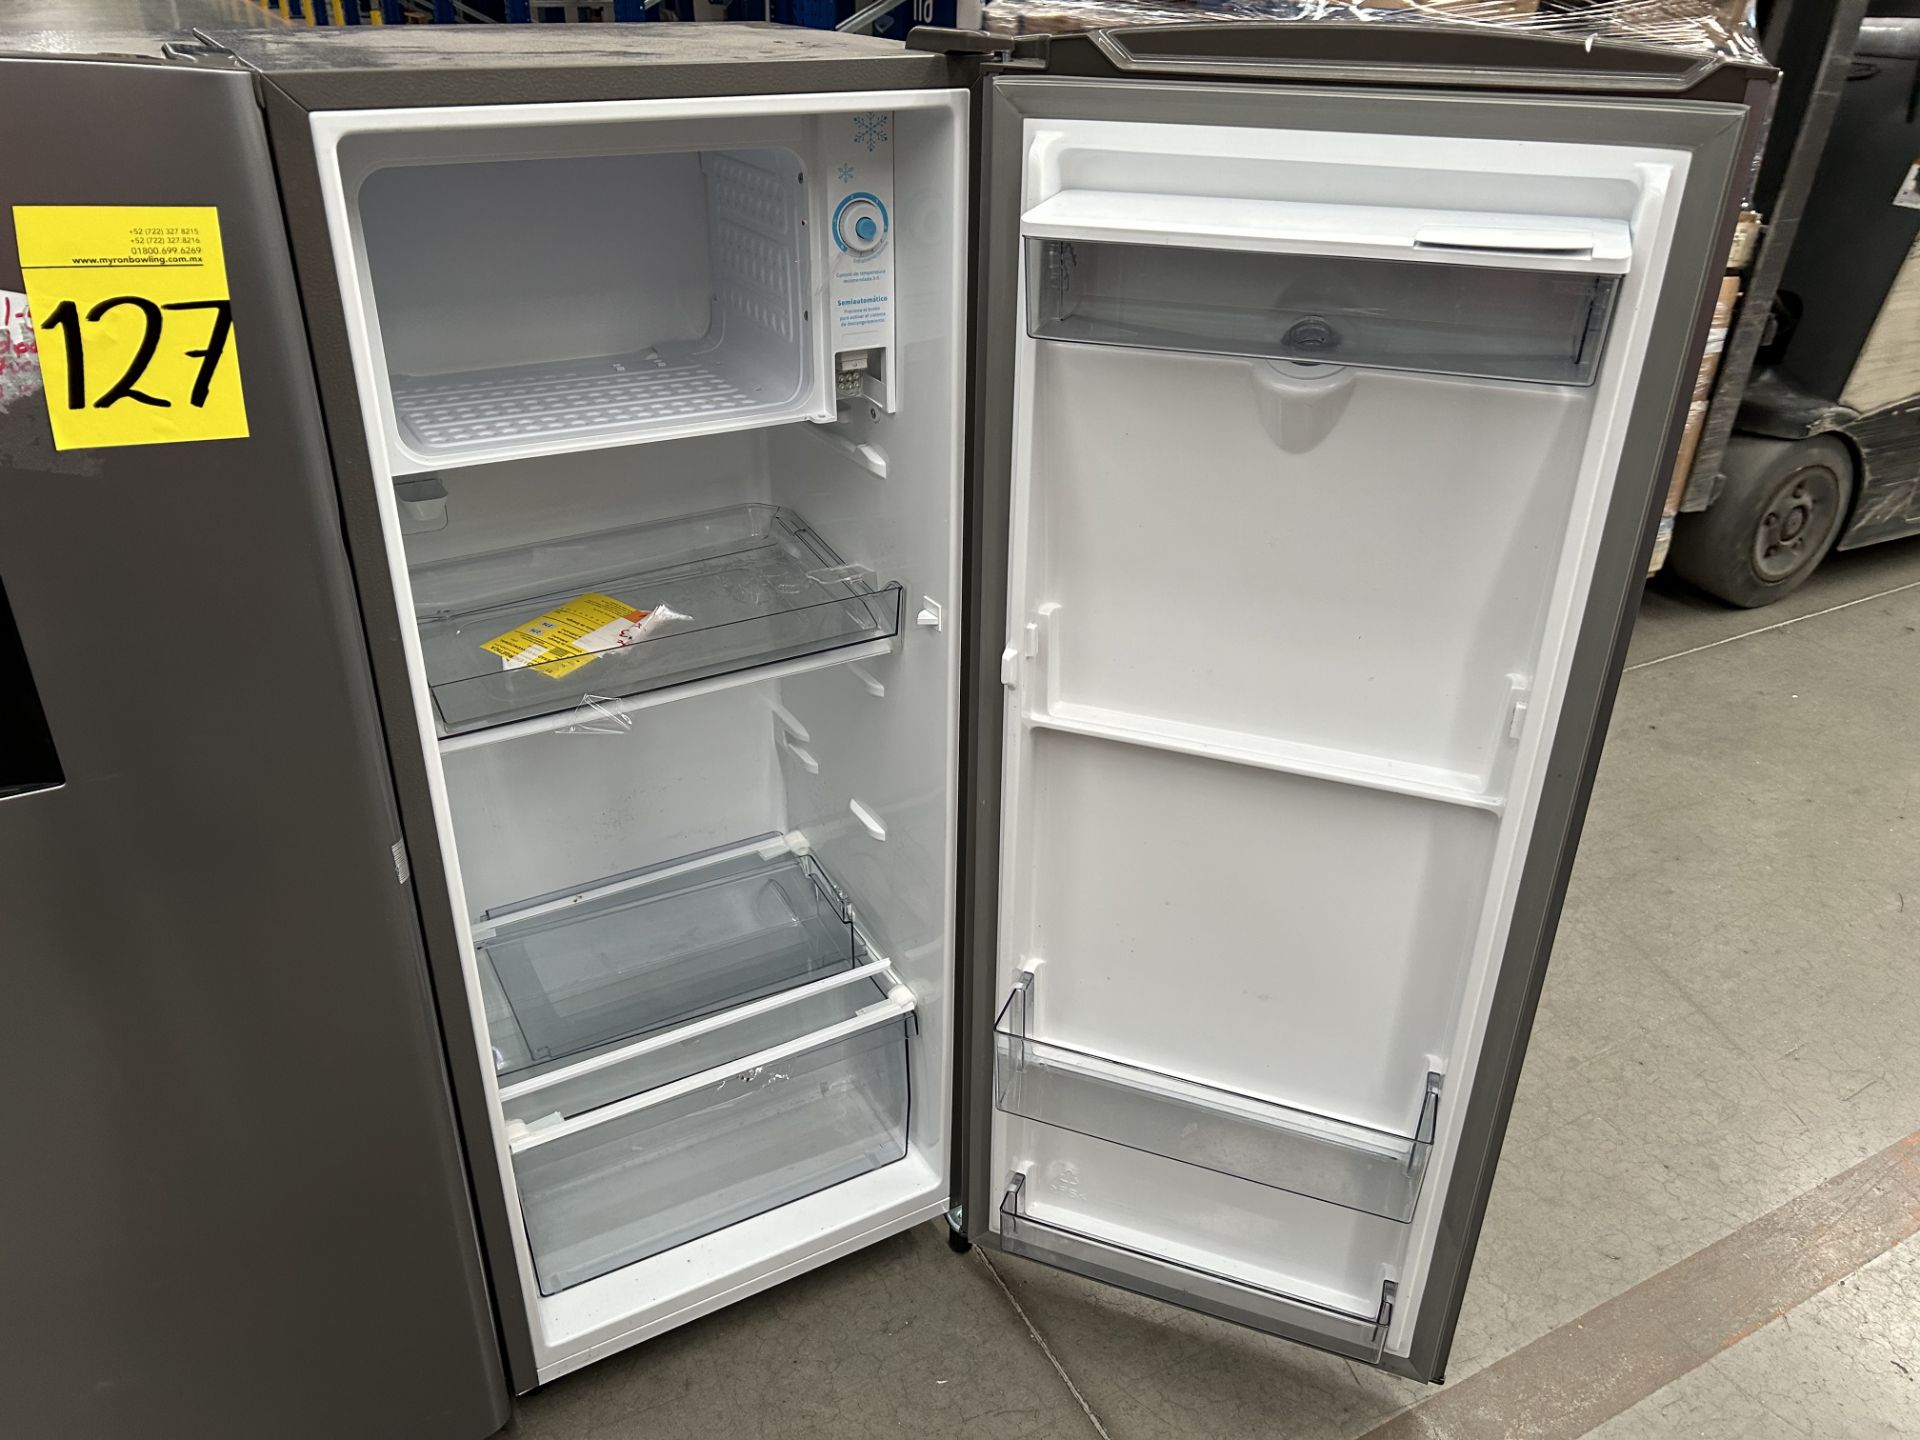 Lote de 2 refrigeradores contiene: 1 Refrigerador con dispensador de agua Marca HISENSE, Modelo RR6 - Image 4 of 6